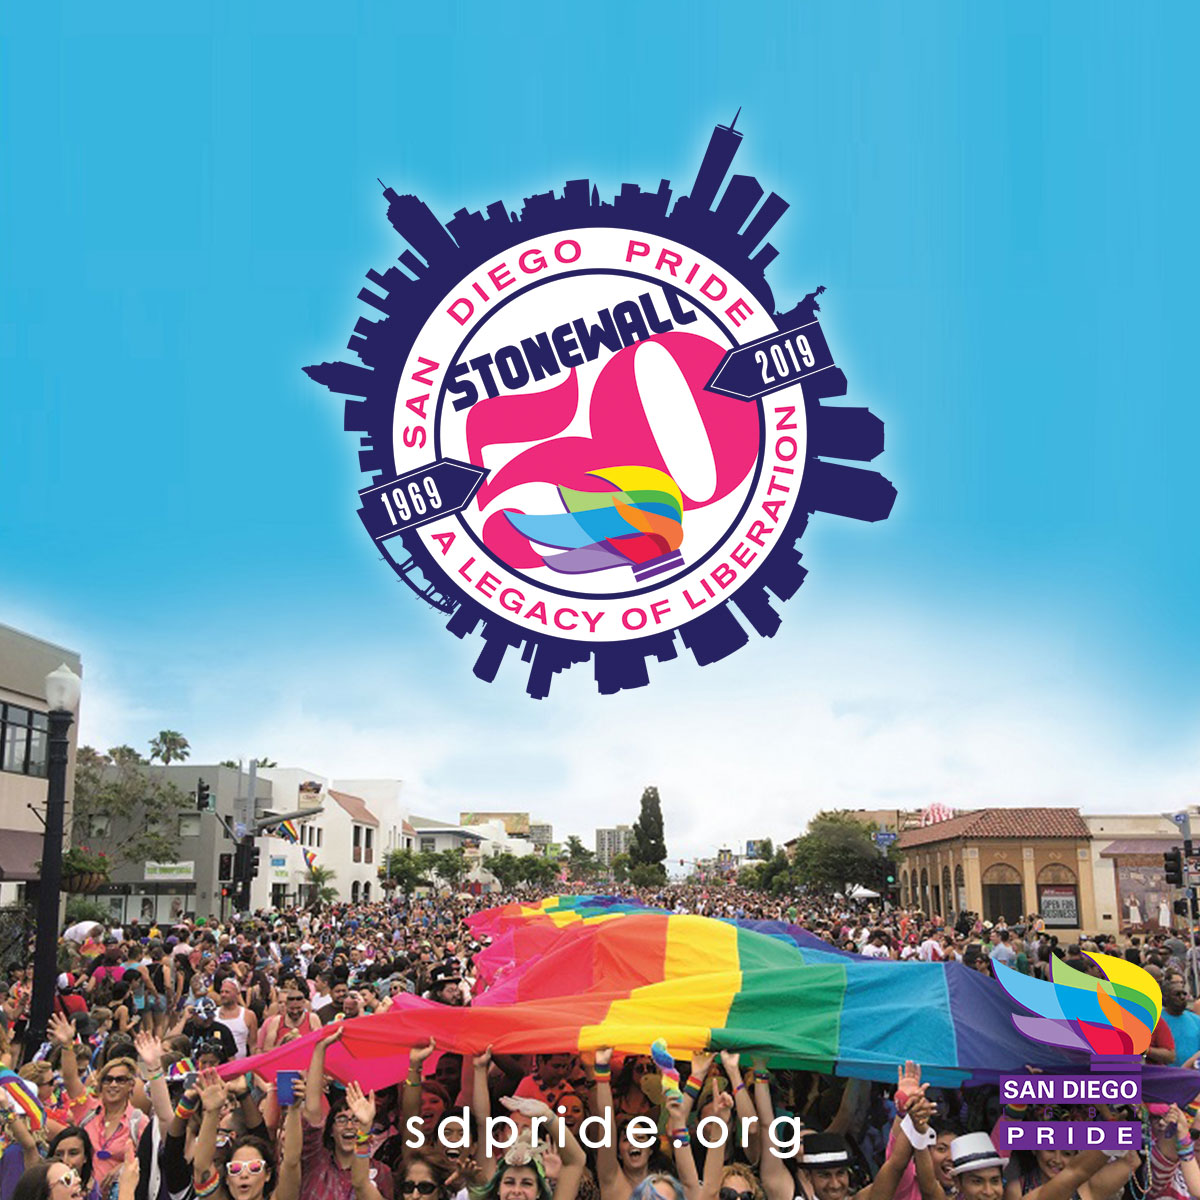 to Pride! San Diego Pride